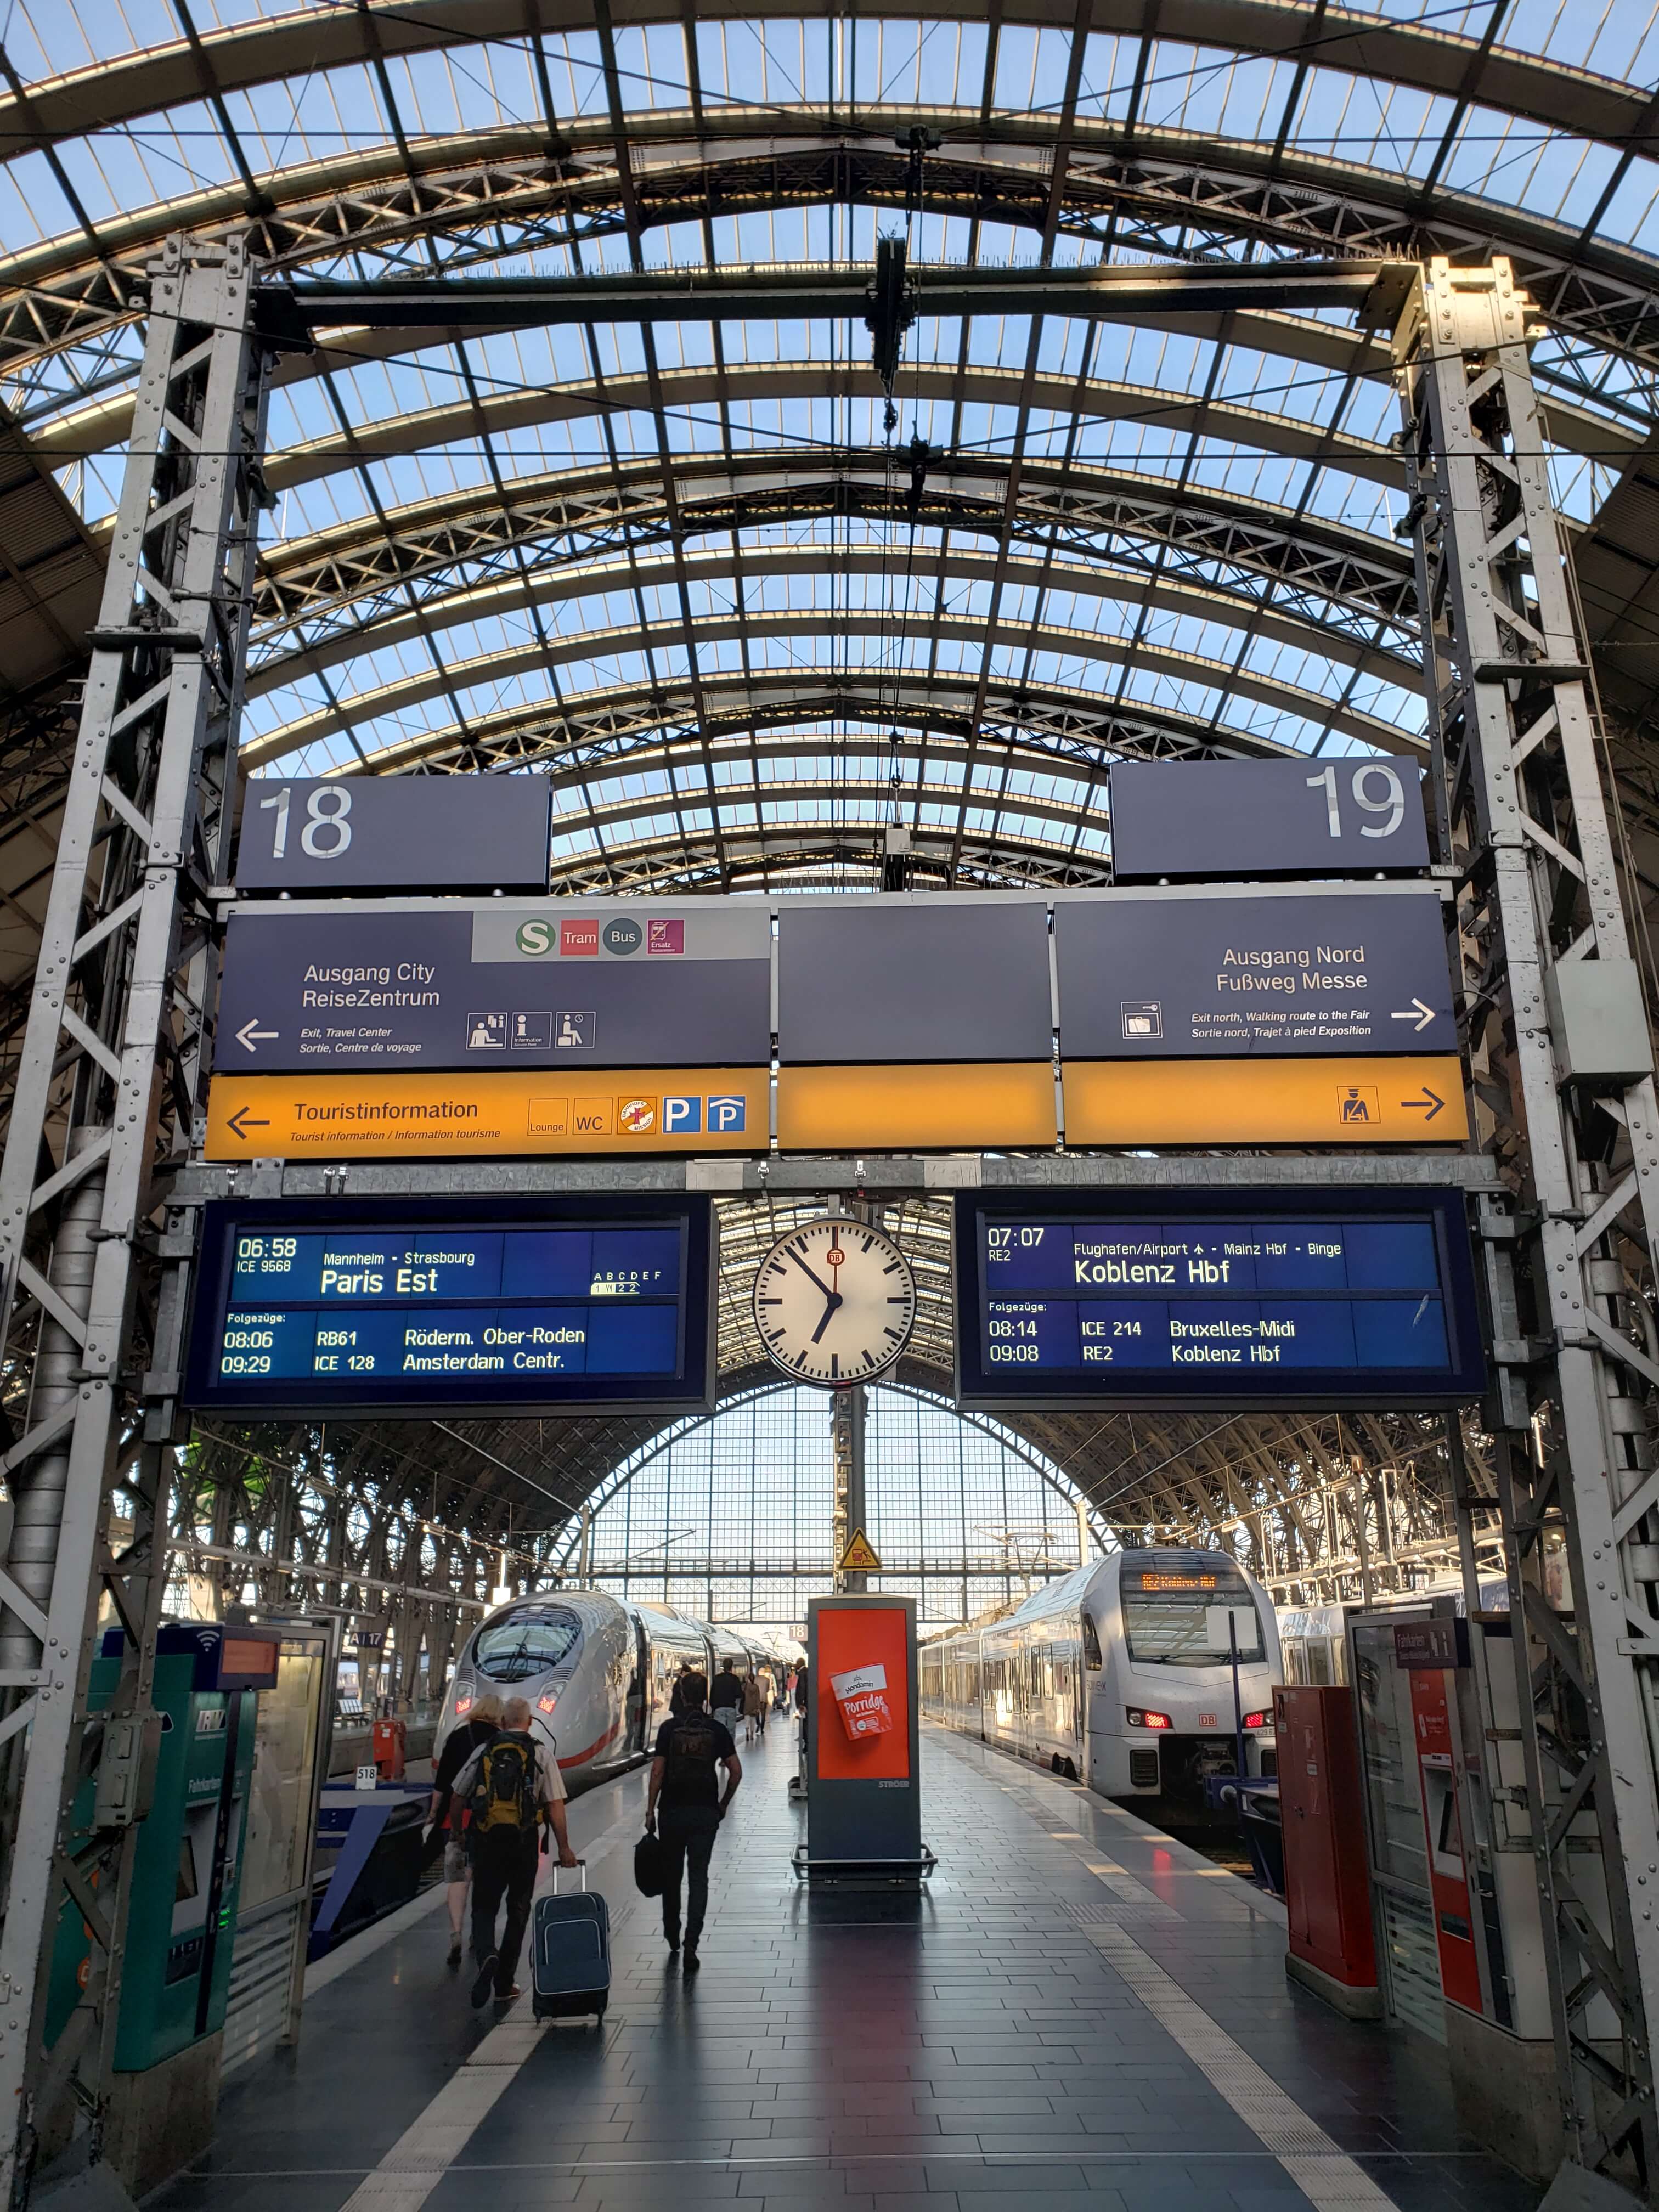 Estação de trem em Frankfurt